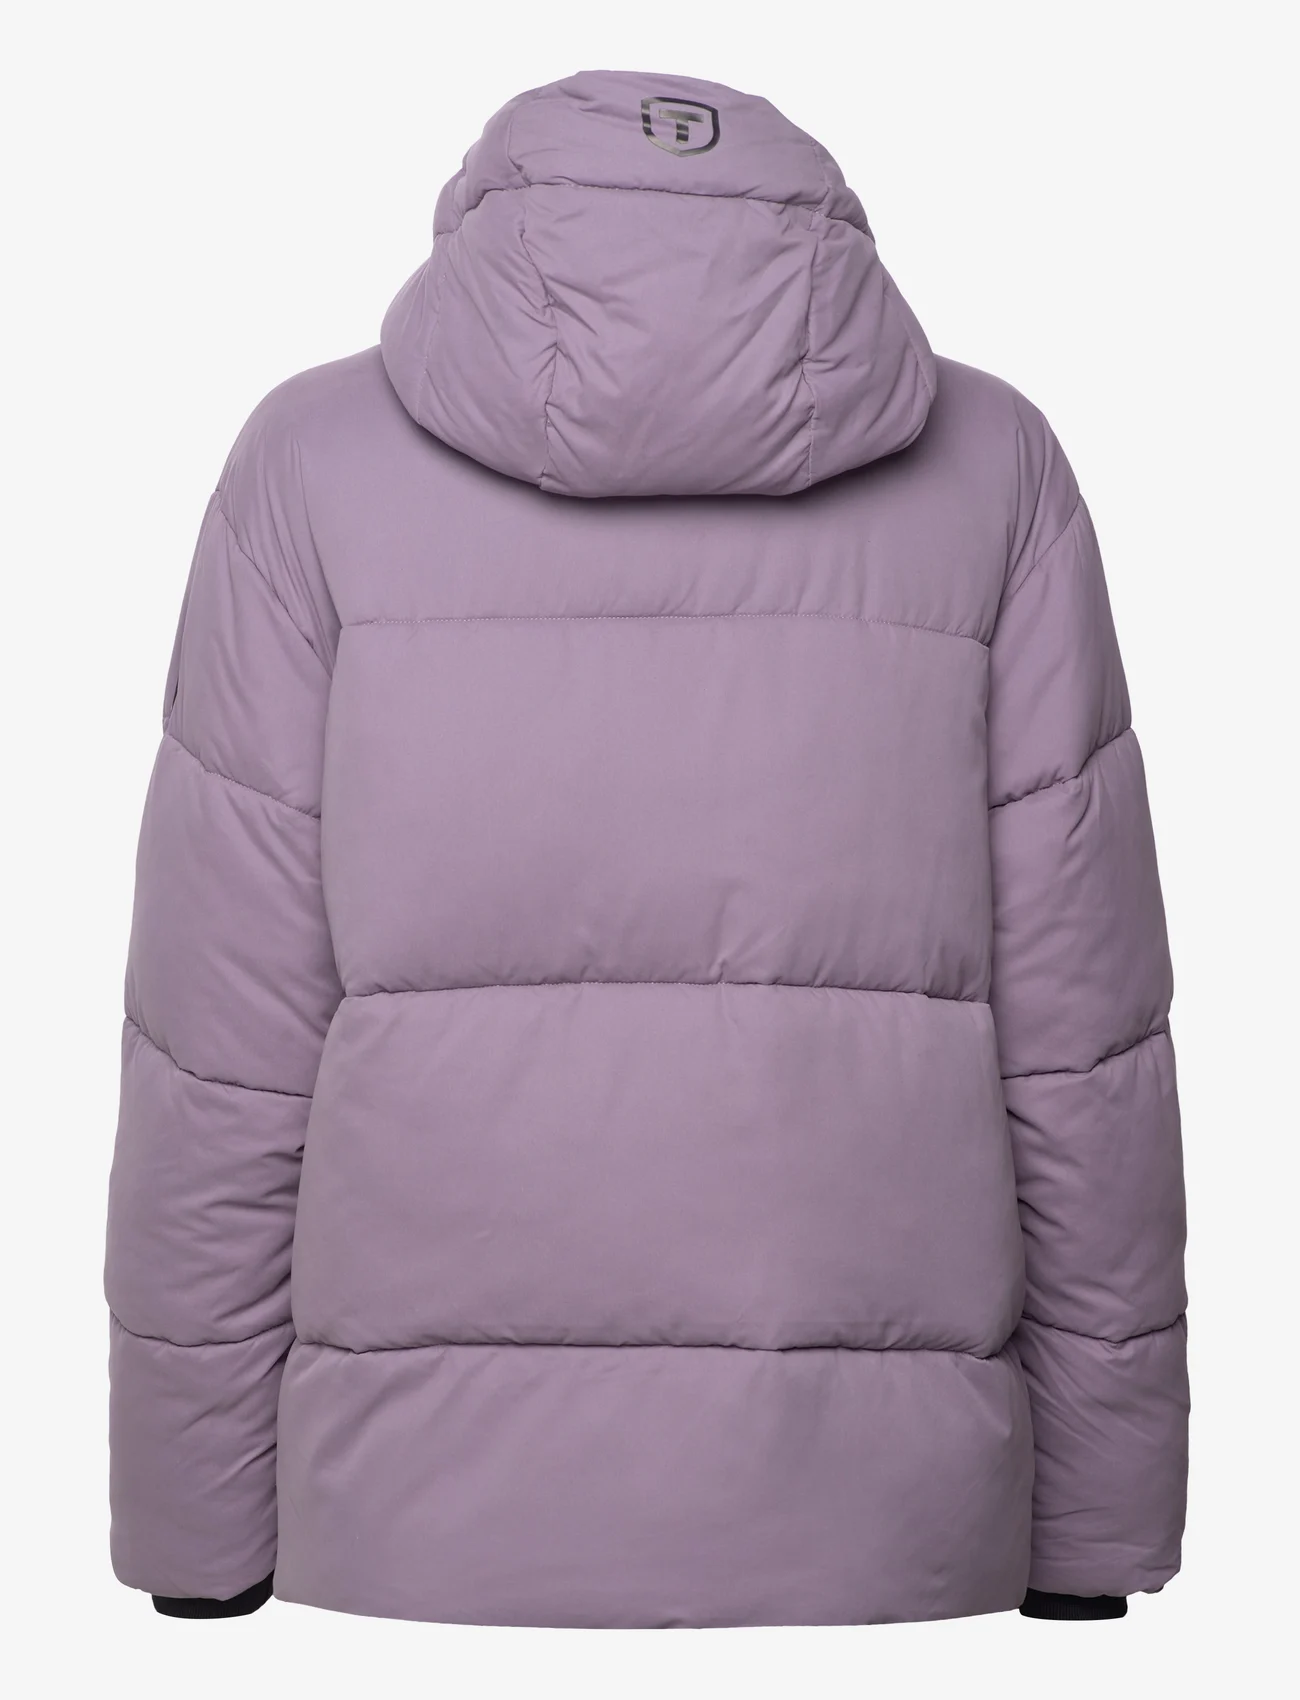 Tenson - Milla Jacket Women - dun- & vadderade jackor - purple - 1